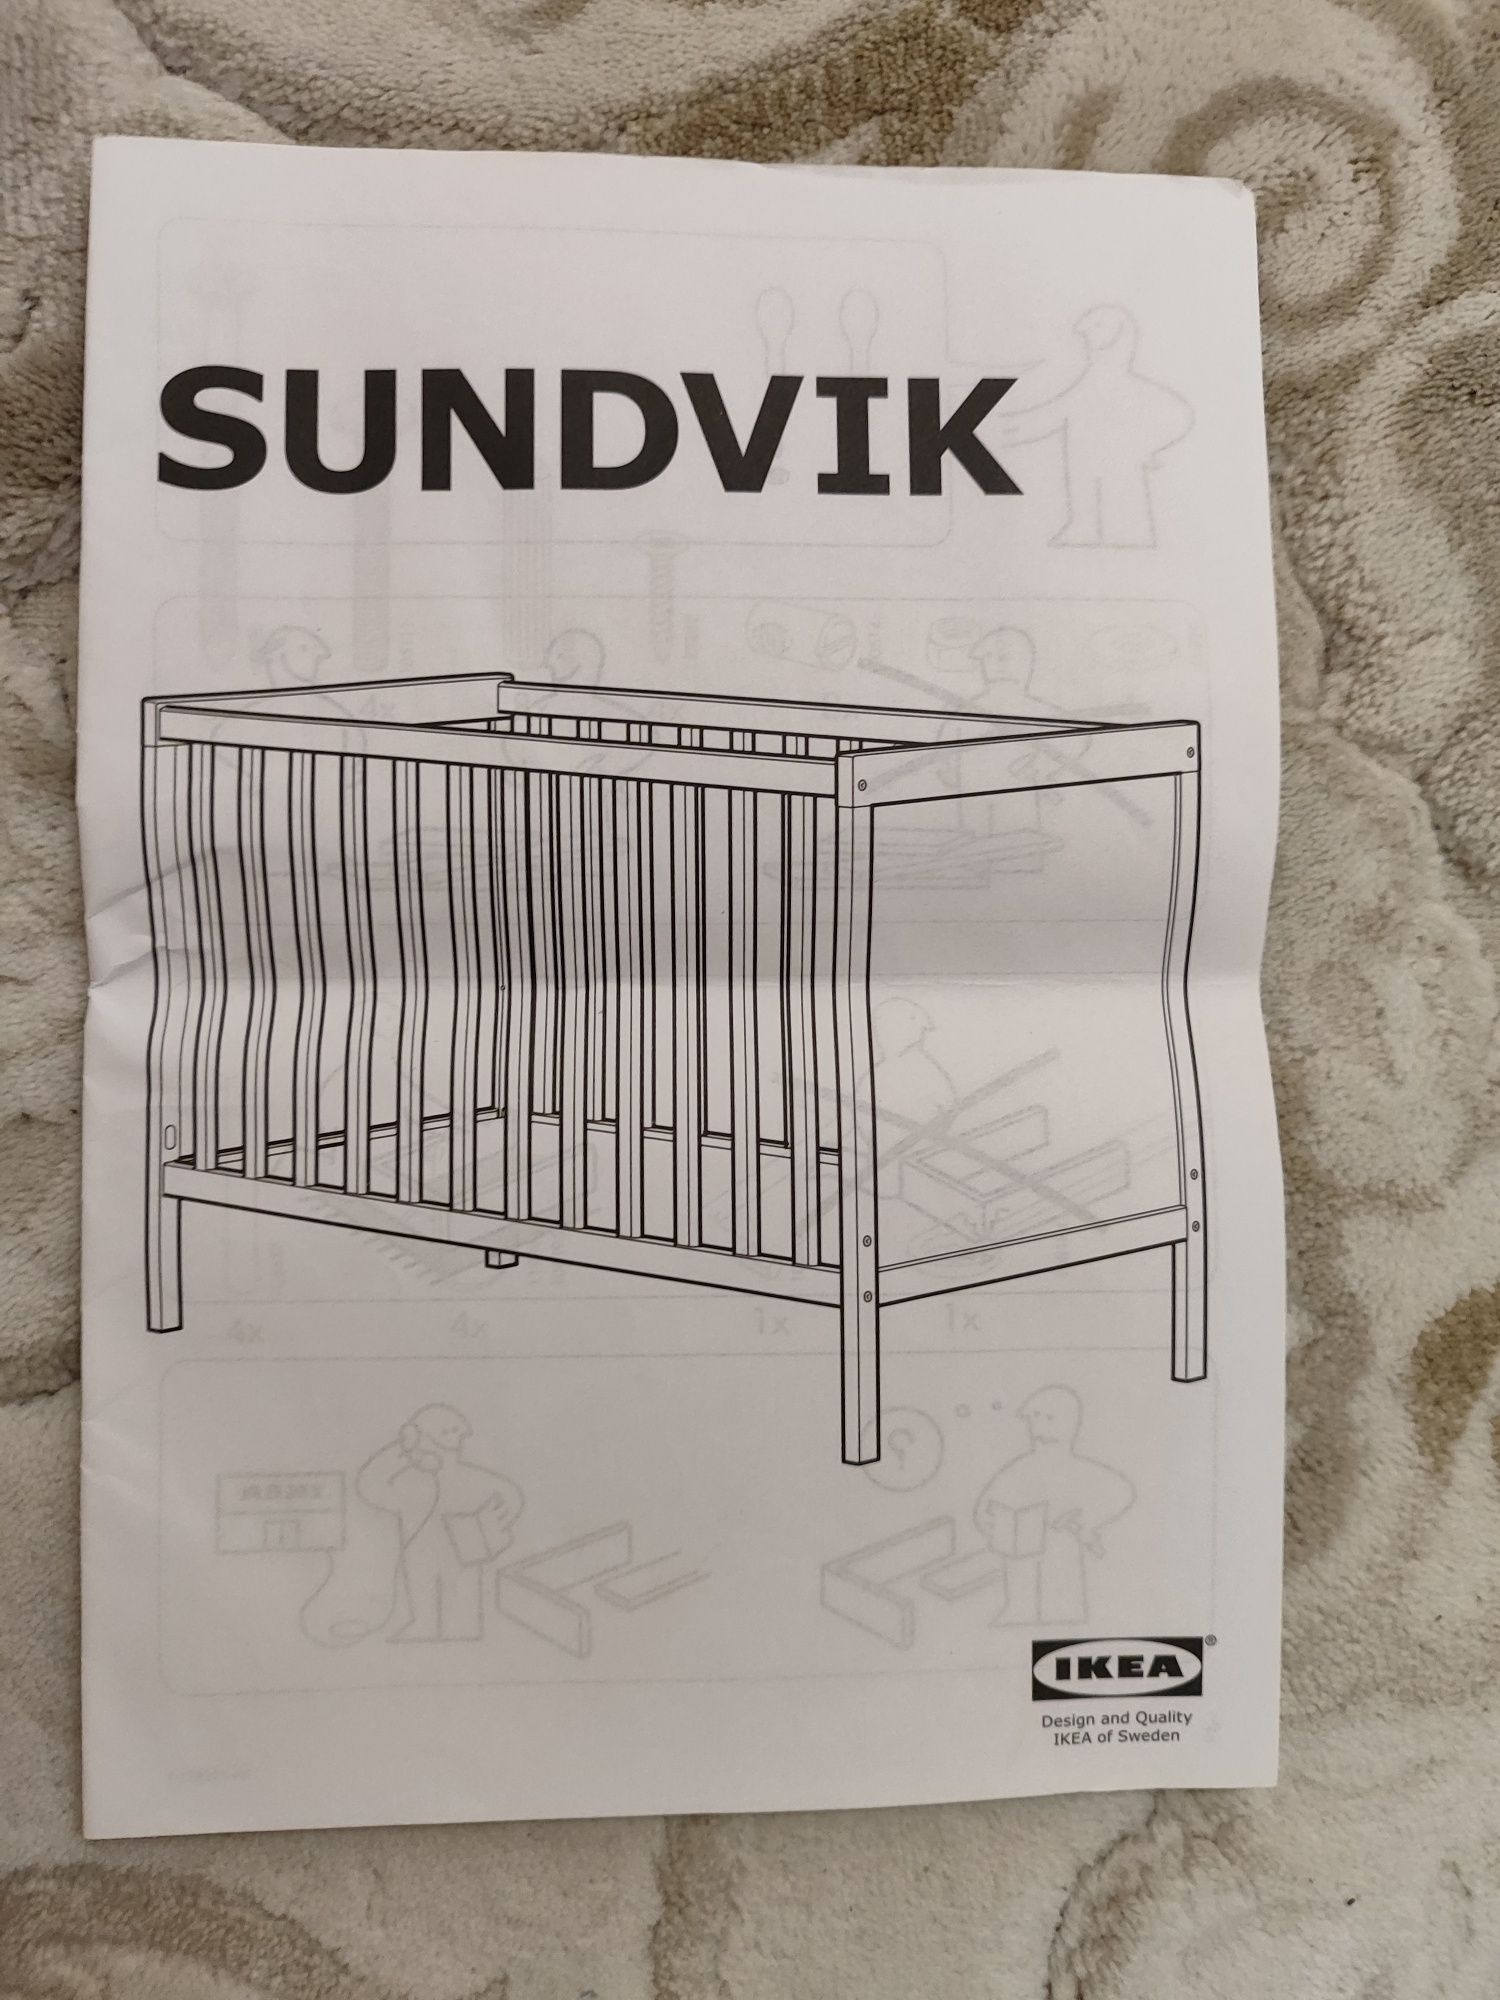 Продается качественная кроватка IKEA